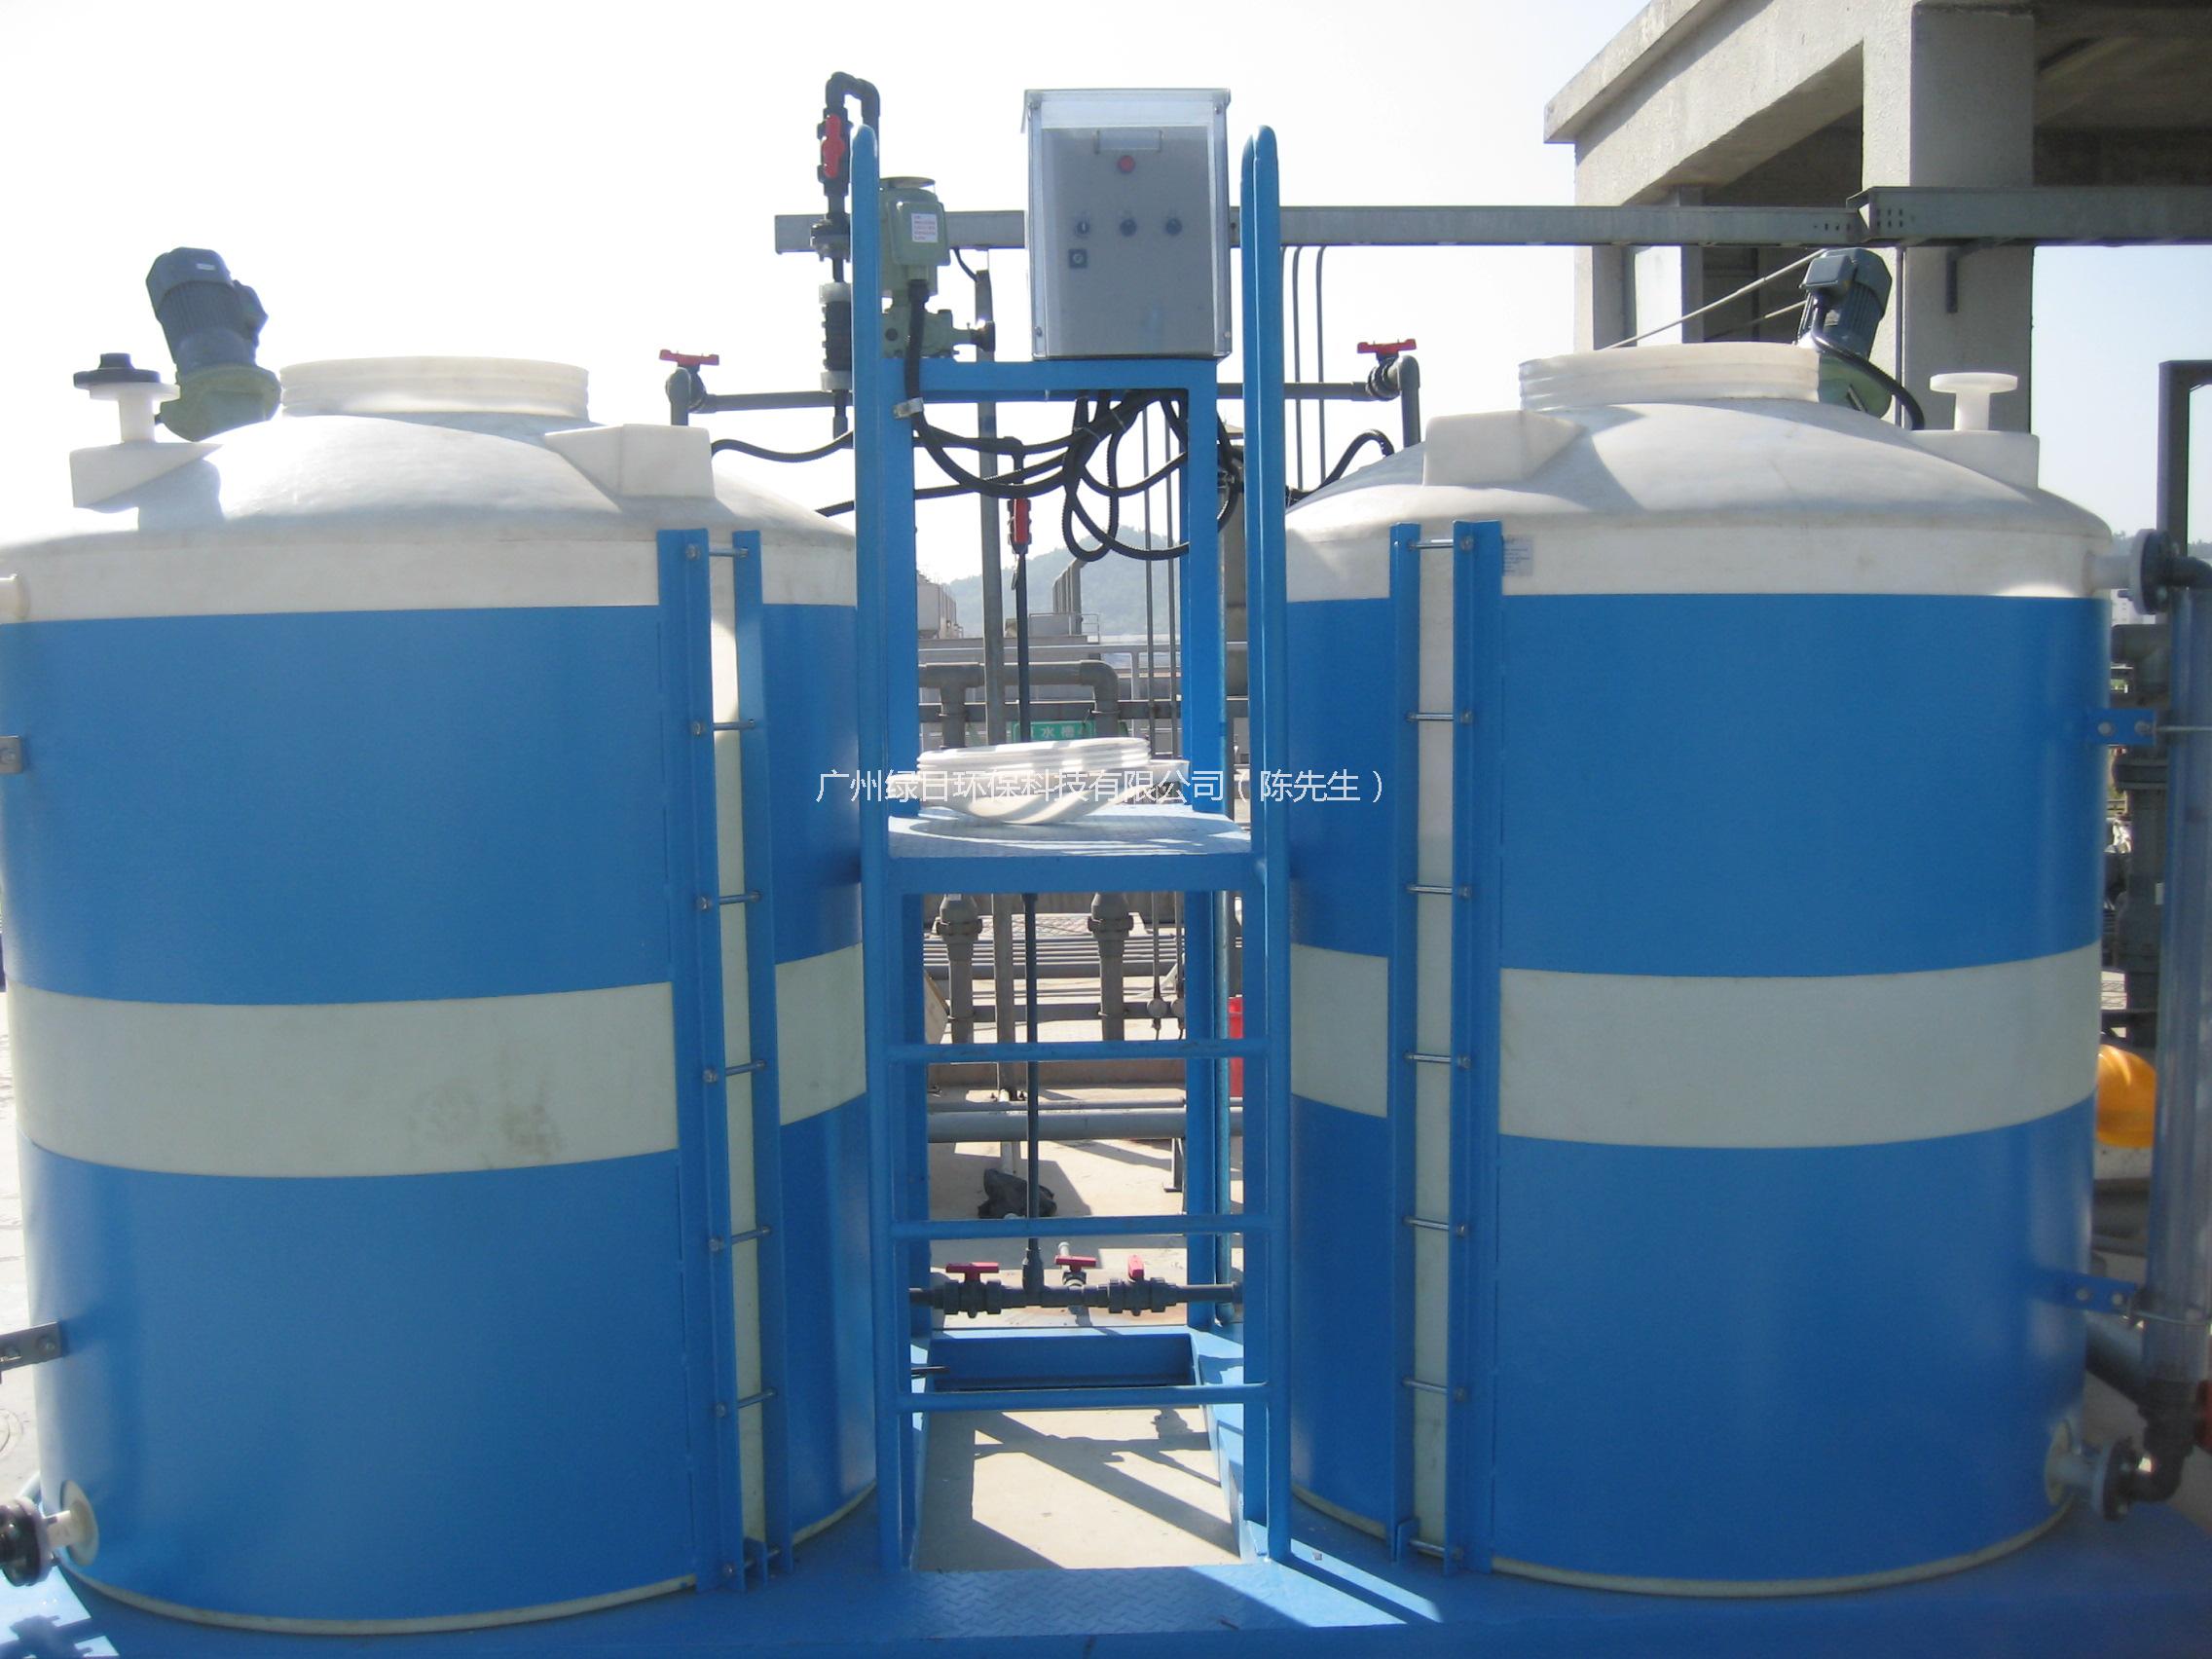 广州市养猪 养鸭 养鸡 养殖污水处理设备厂家供应用于污水处理的养猪 养鸭 养鸡 养殖污水处理设备